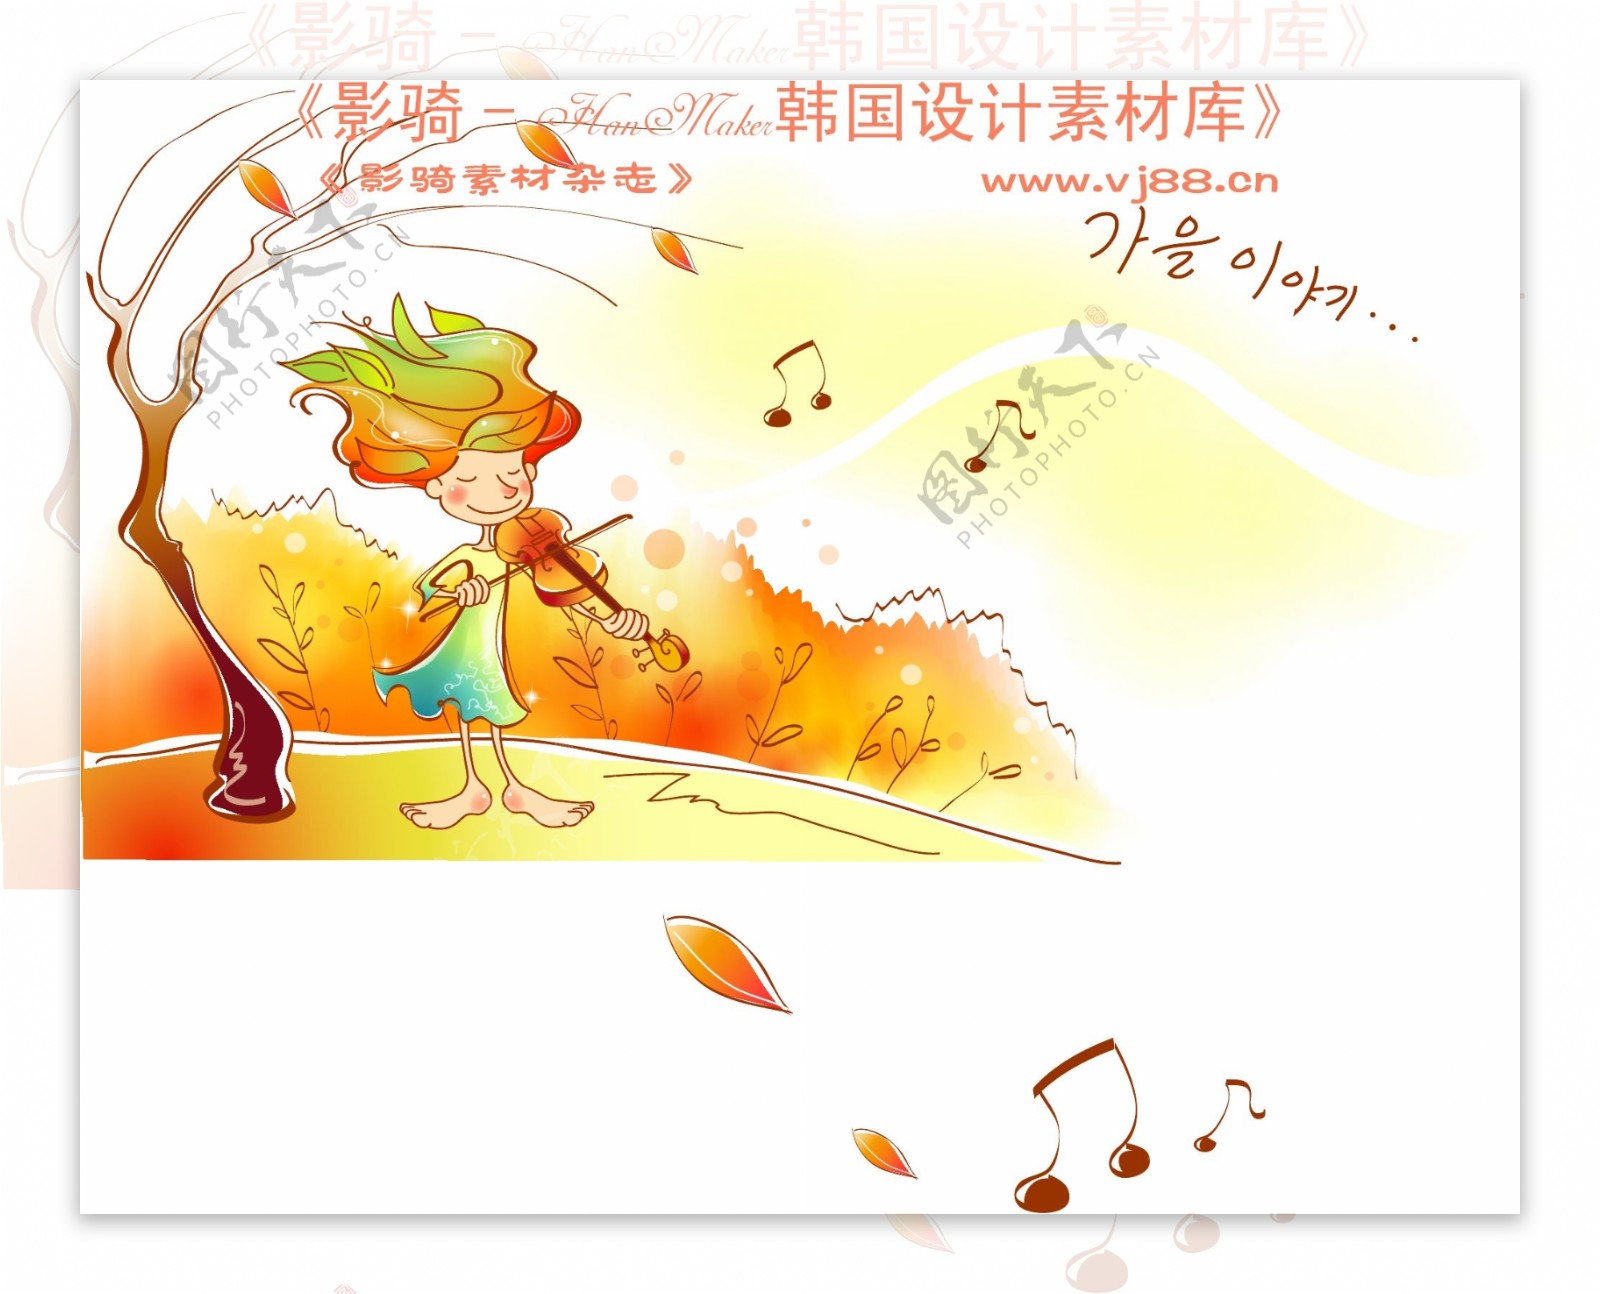 秋的儿童卡通人物秋季矢量素材矢量图片HanMaker韩国设计素材库